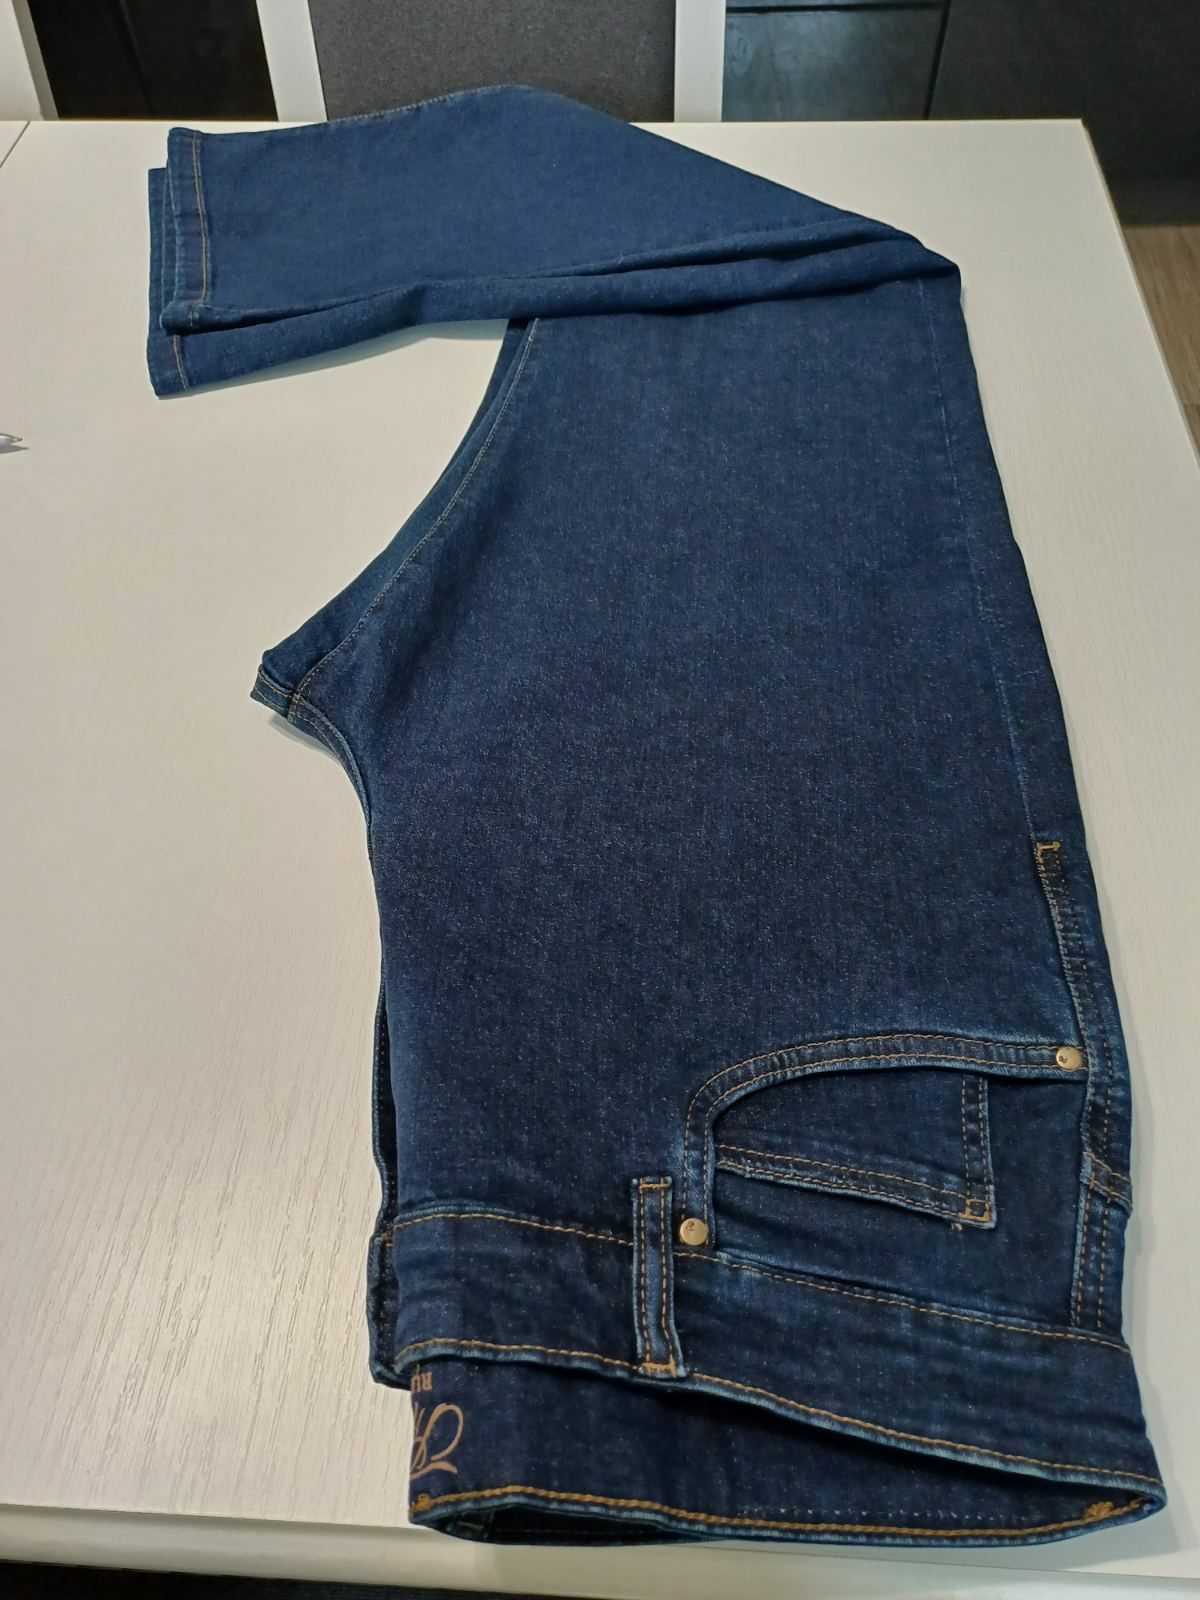 Spodnie męskie nowe granatowy jeans The End W34 L 32.